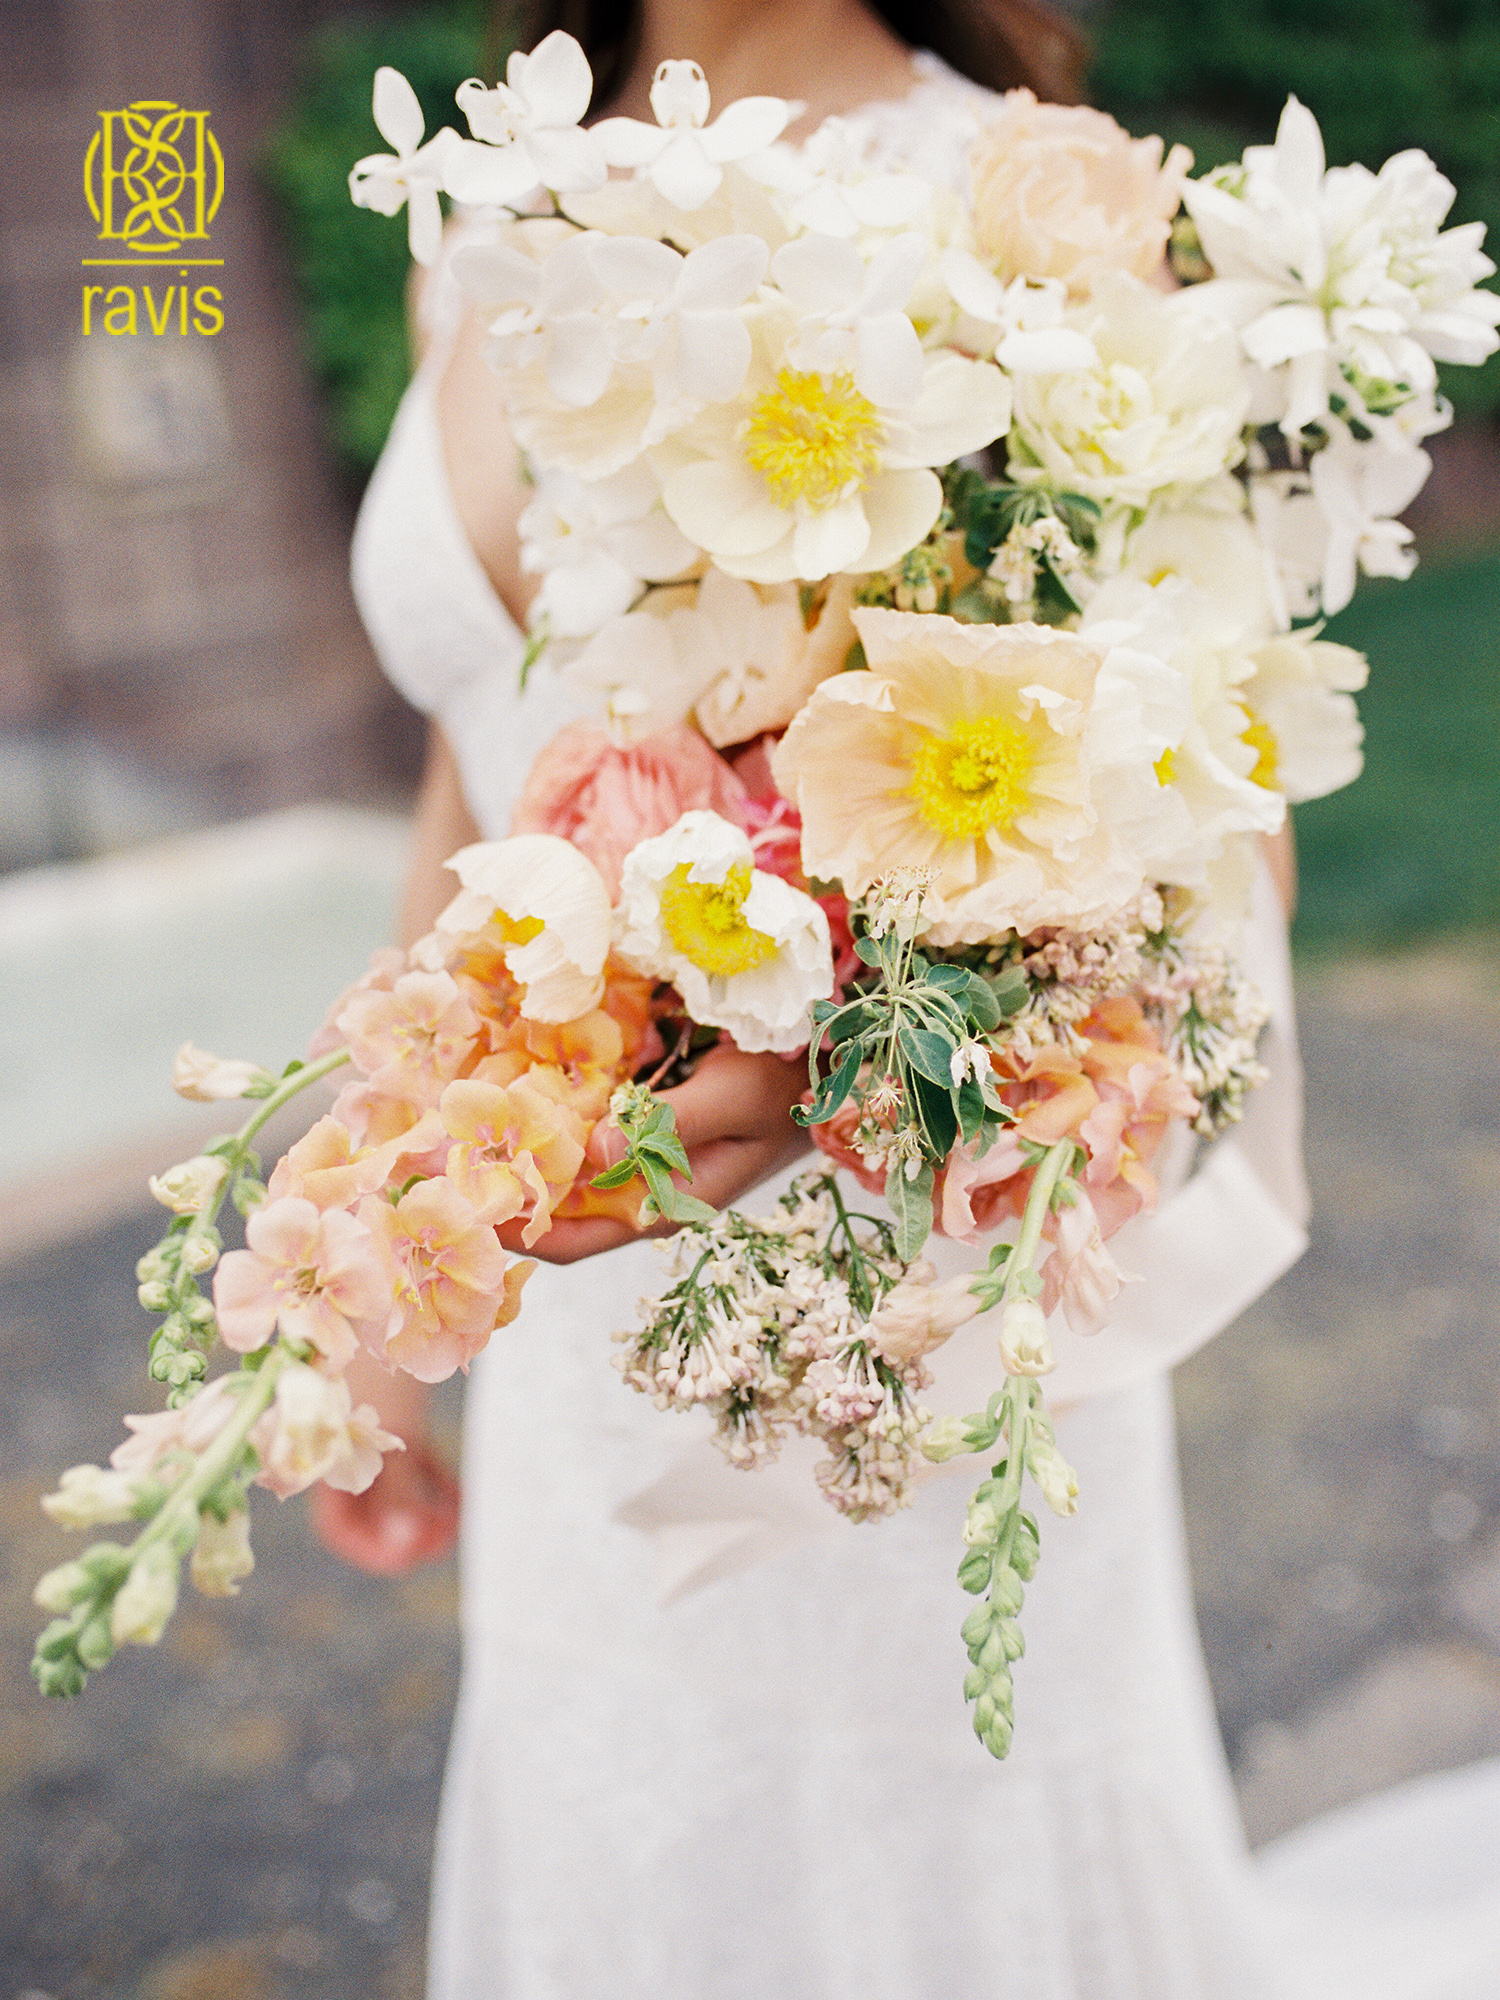 دسته گل عروس با گل‌های وحشی| دسته گل| دسته گل عروس| آرایشگاه زنانه| انتخاب دسته گل عروس| رنگ گل های وحشی در ترکیب دسته گل